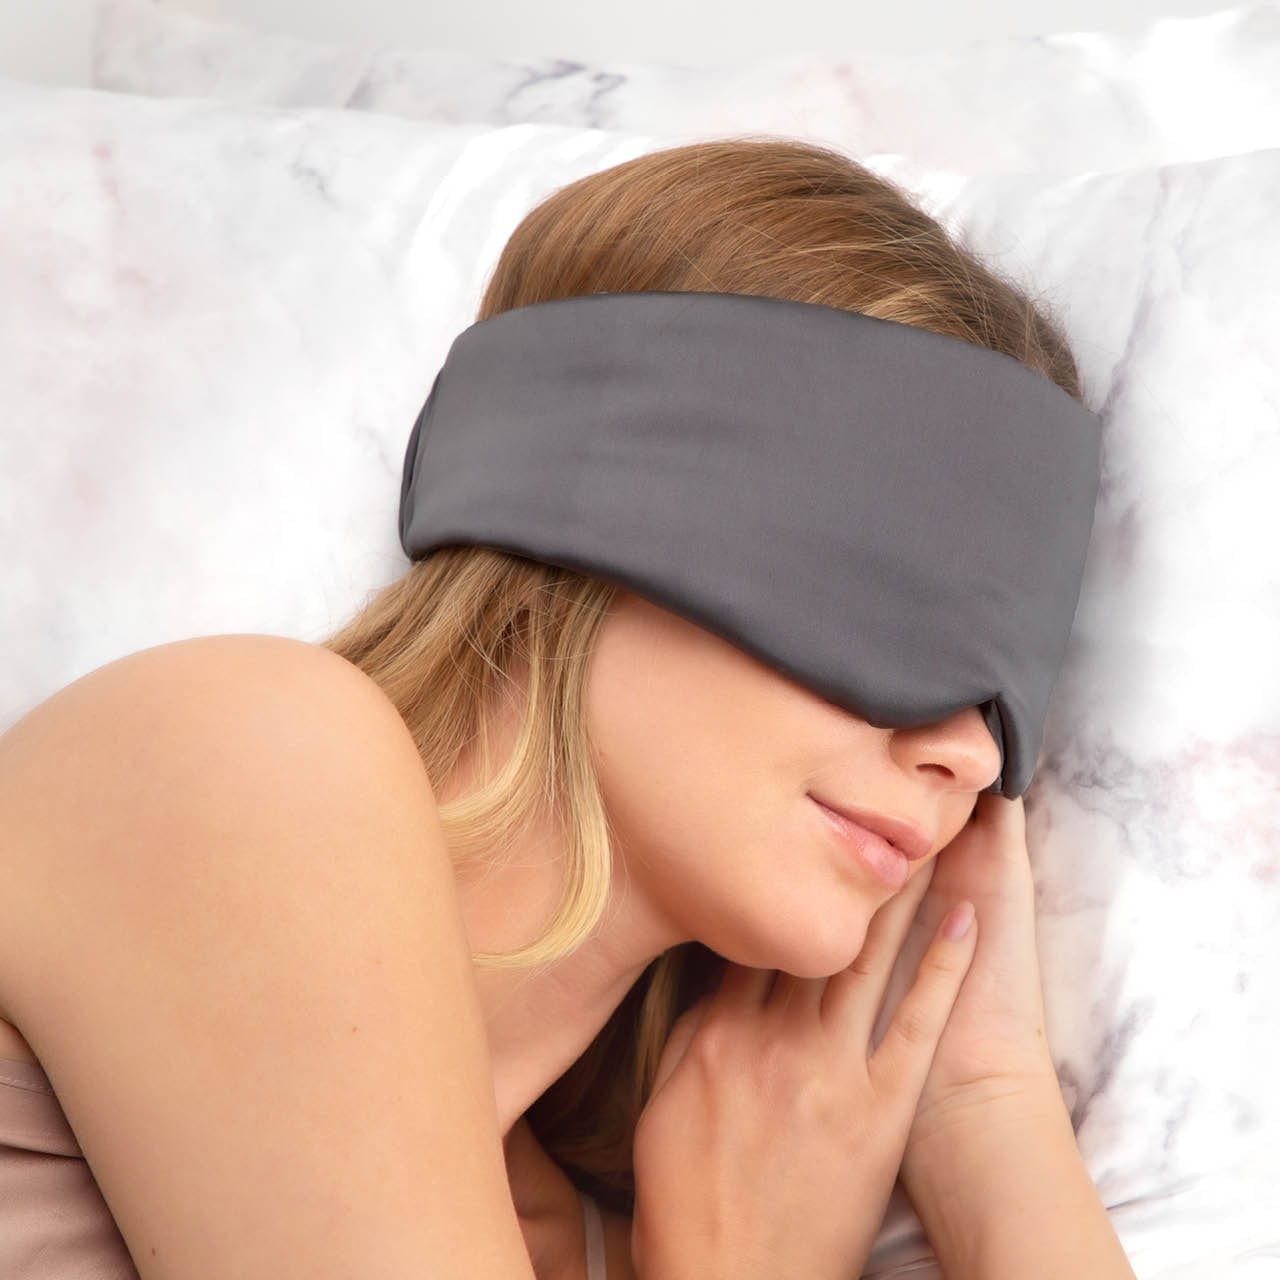 Pillow Eye Mask